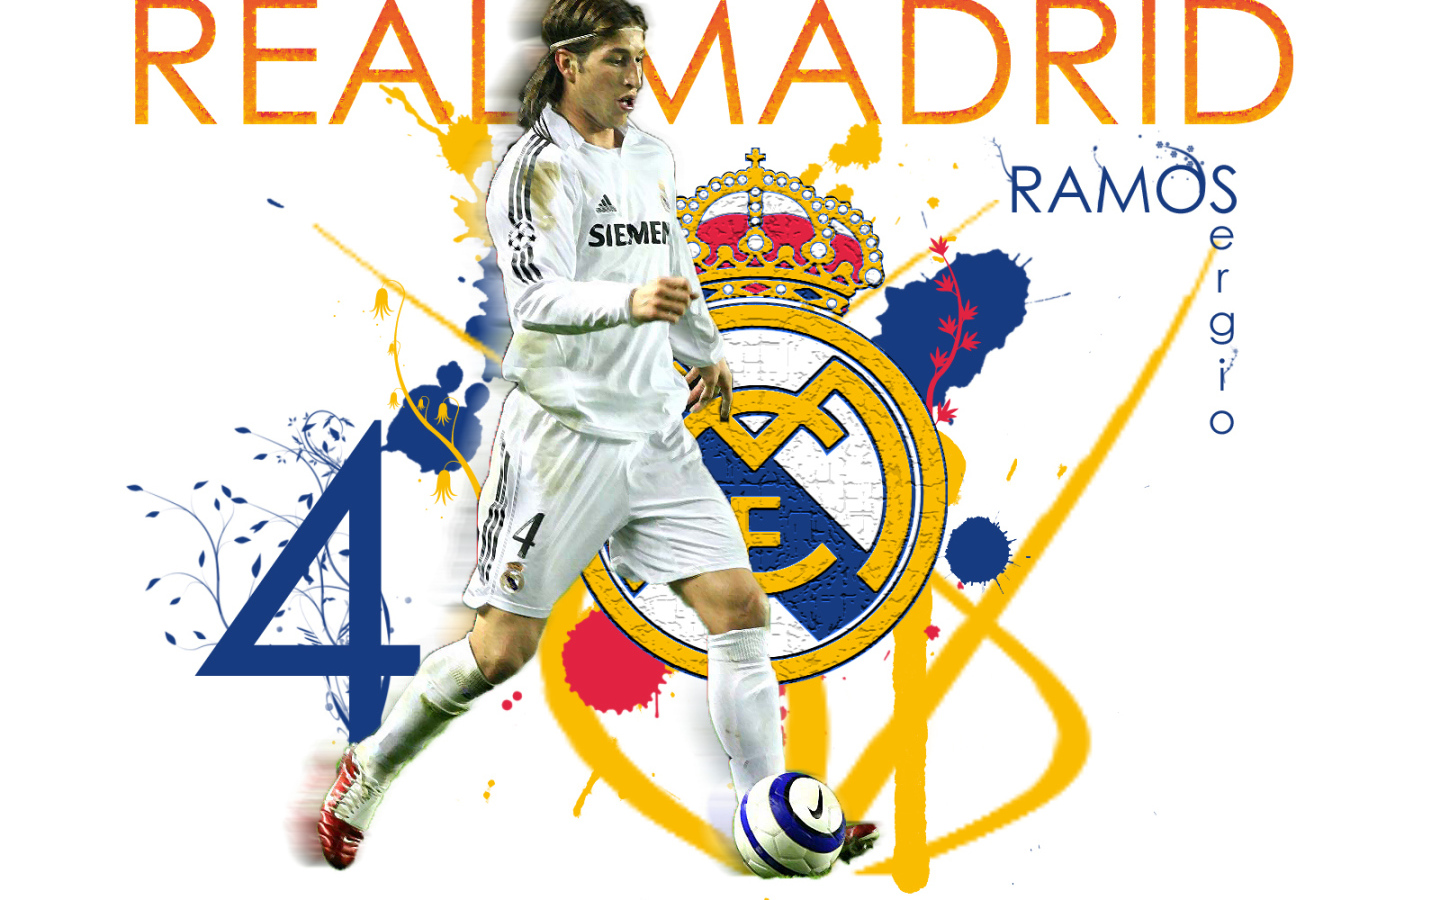 Реал Мадрид Серхио Рамос на белом фоне